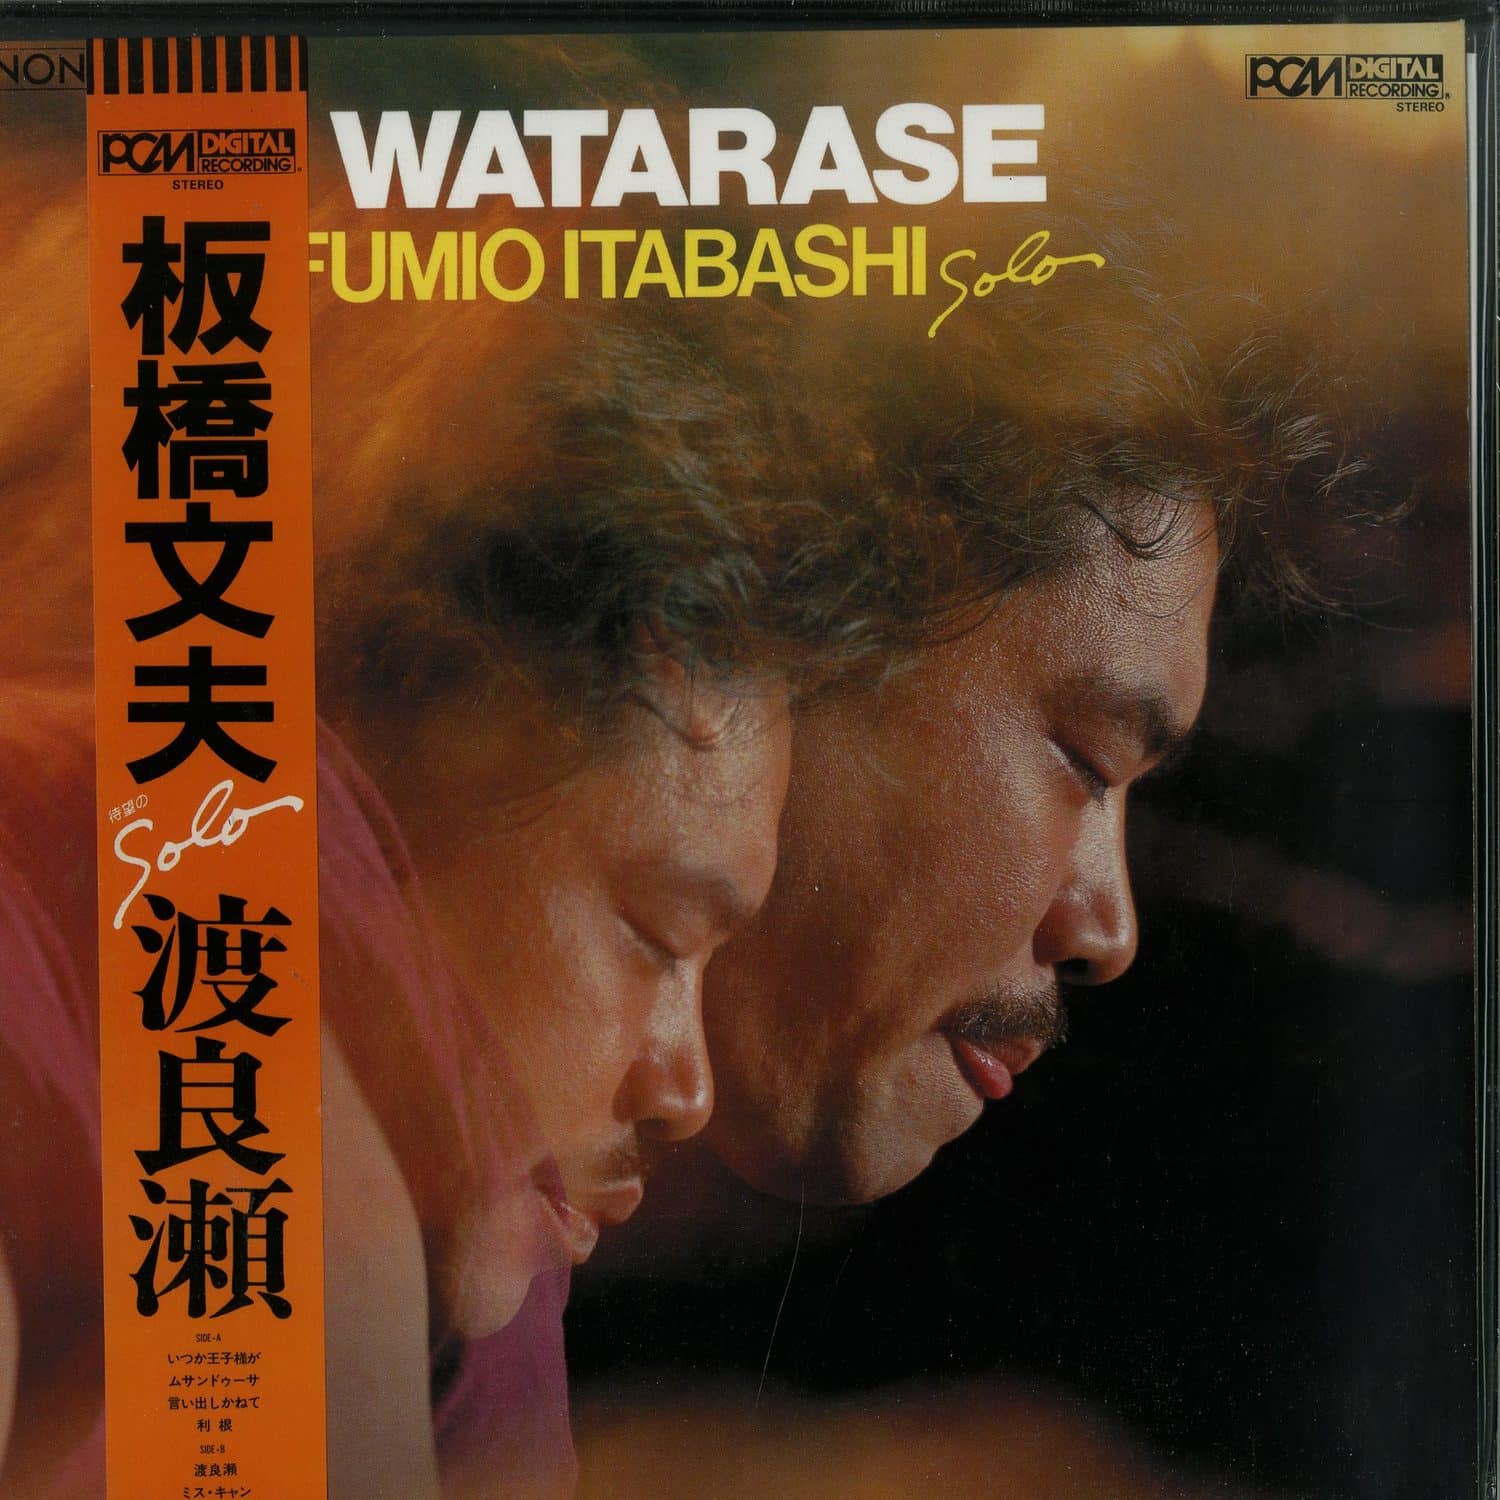 Fumio Itabashi - WATARASE 